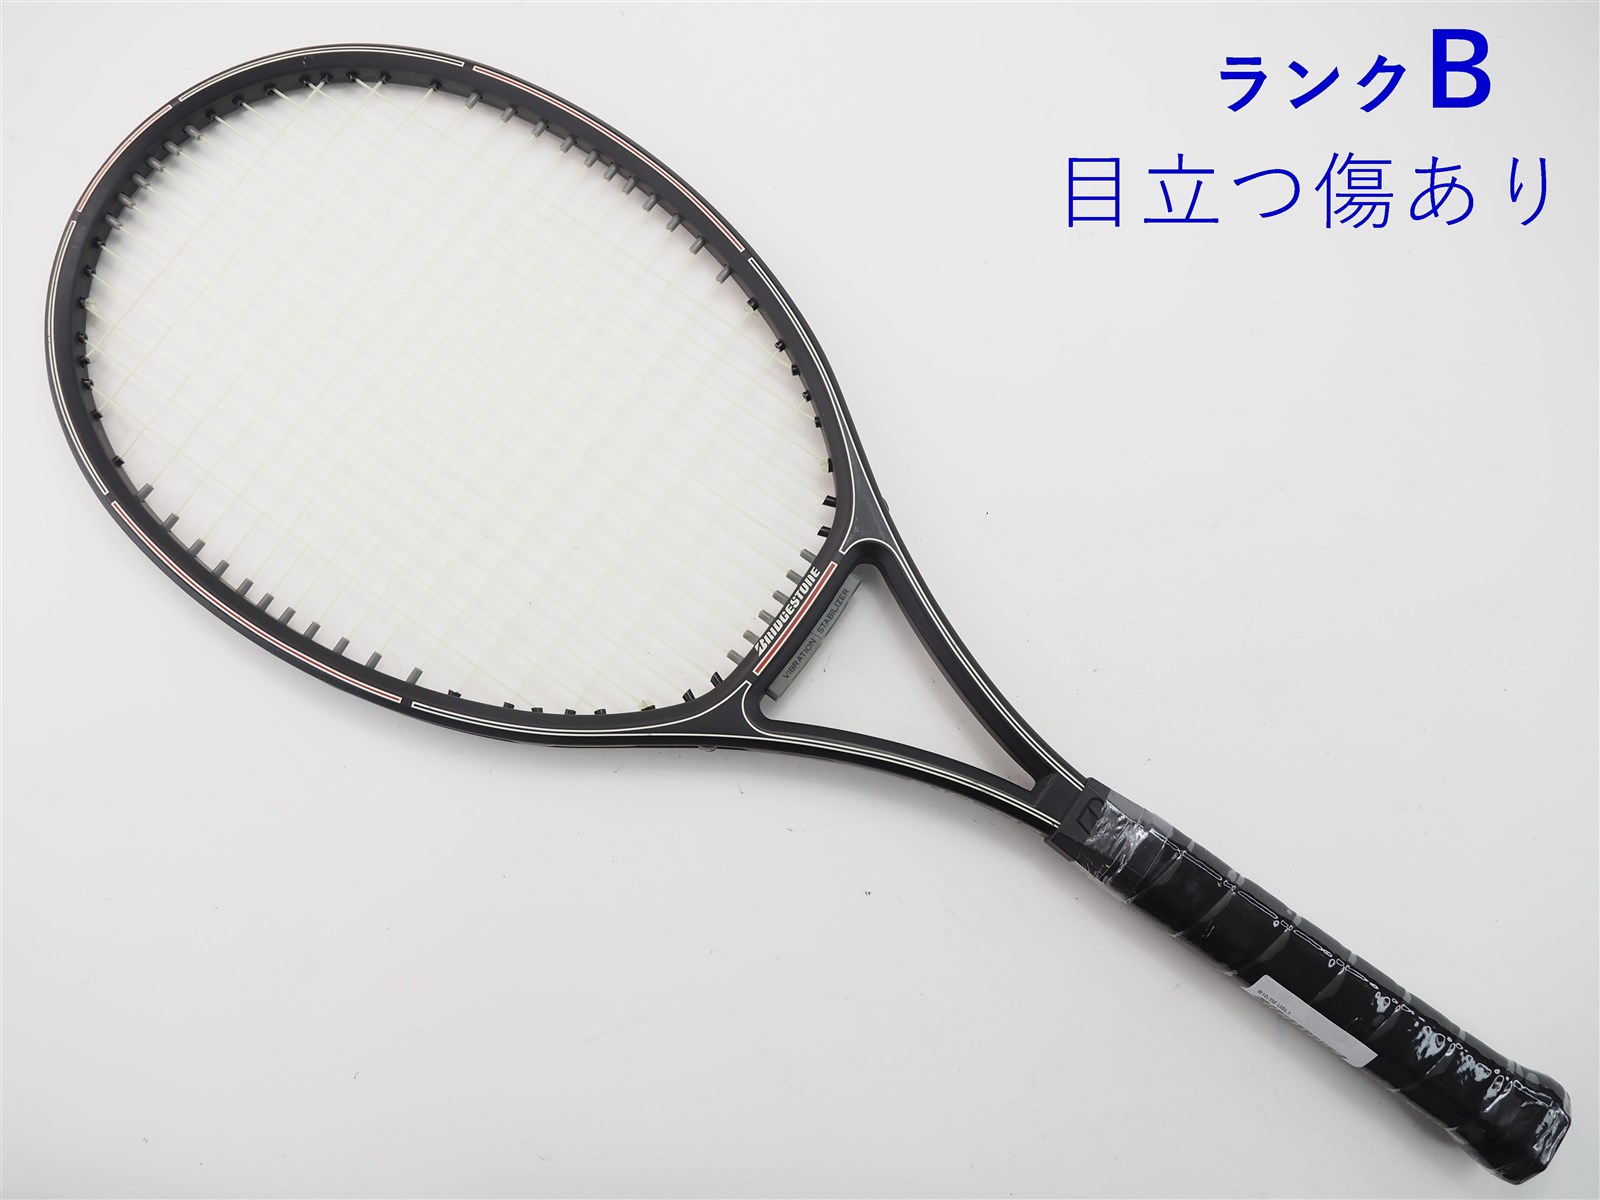 テニスラケット ブリヂストン B10/02 (USL1)BRIDGESTONE B10/02